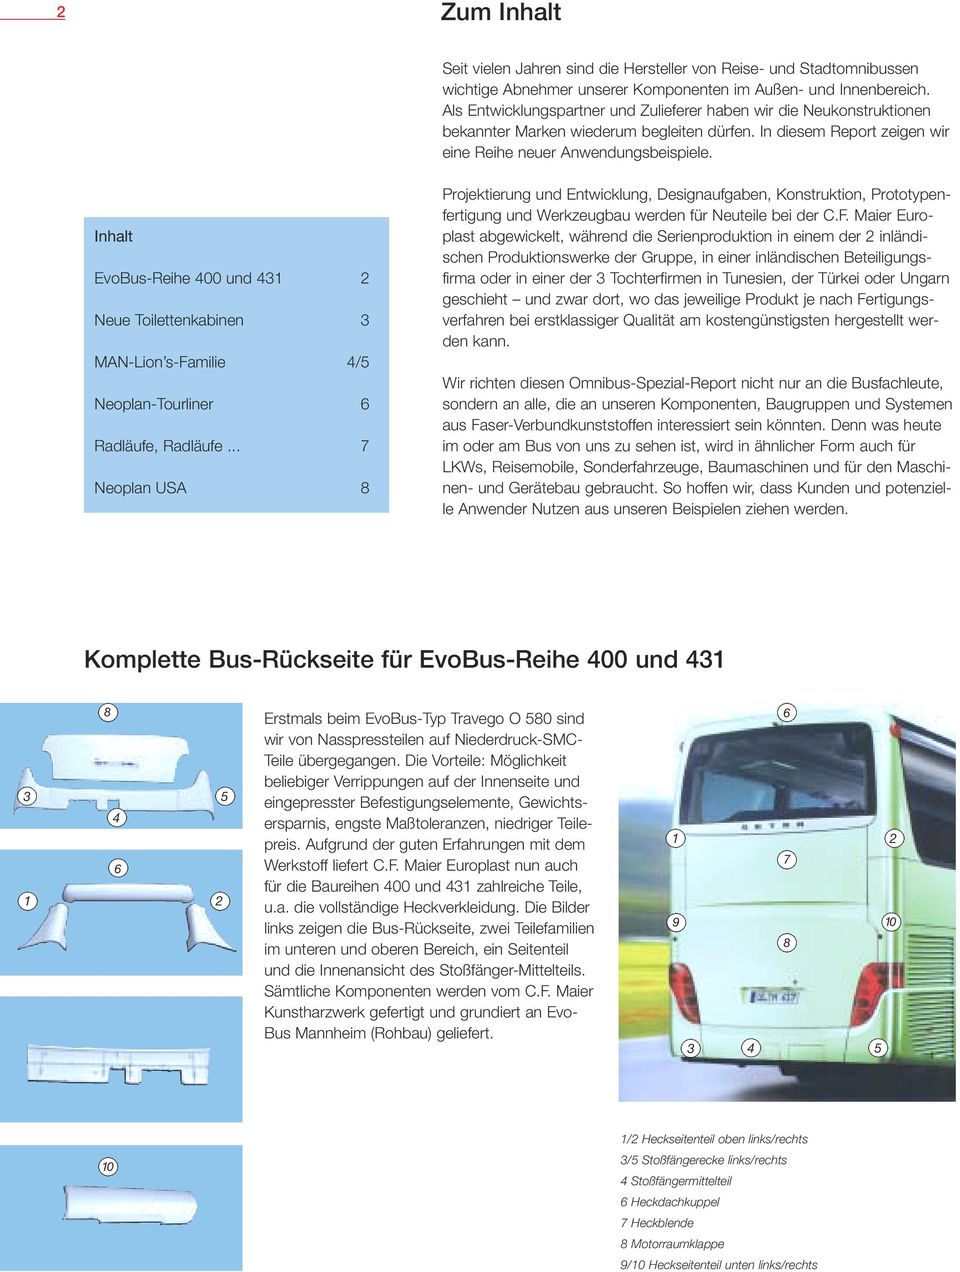 Inhalt EvoBus-Reihe 00 und 2 Neue Toilettenkabinen MAN-Lion s-familie / Neoplan-Tourliner 6 Radläufe, Radläufe.